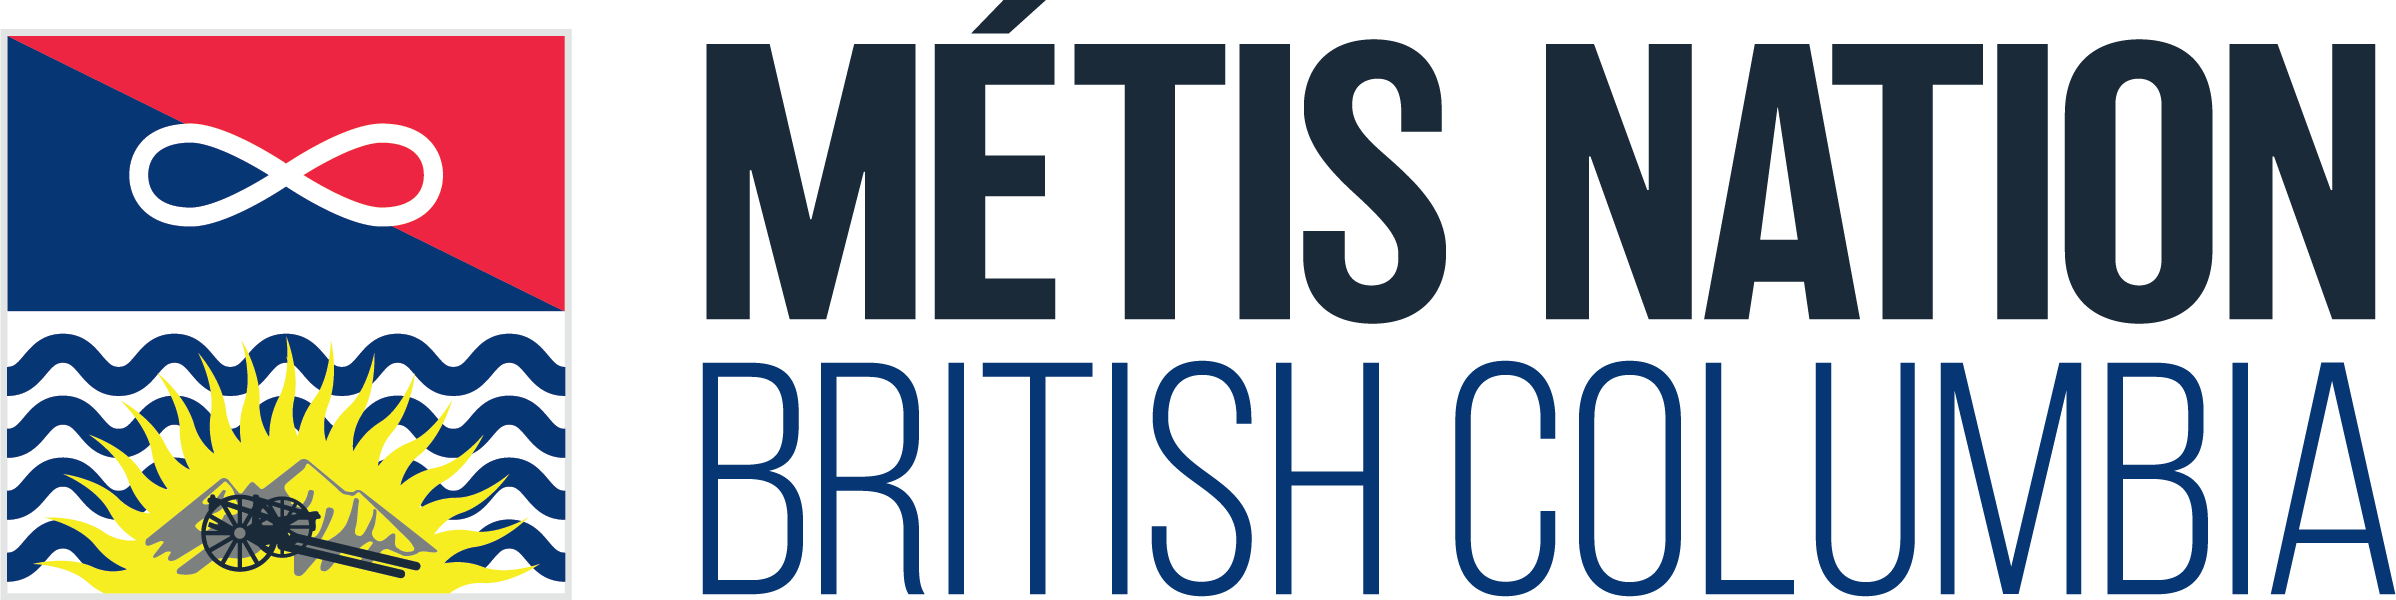 metis-nation-logo.png